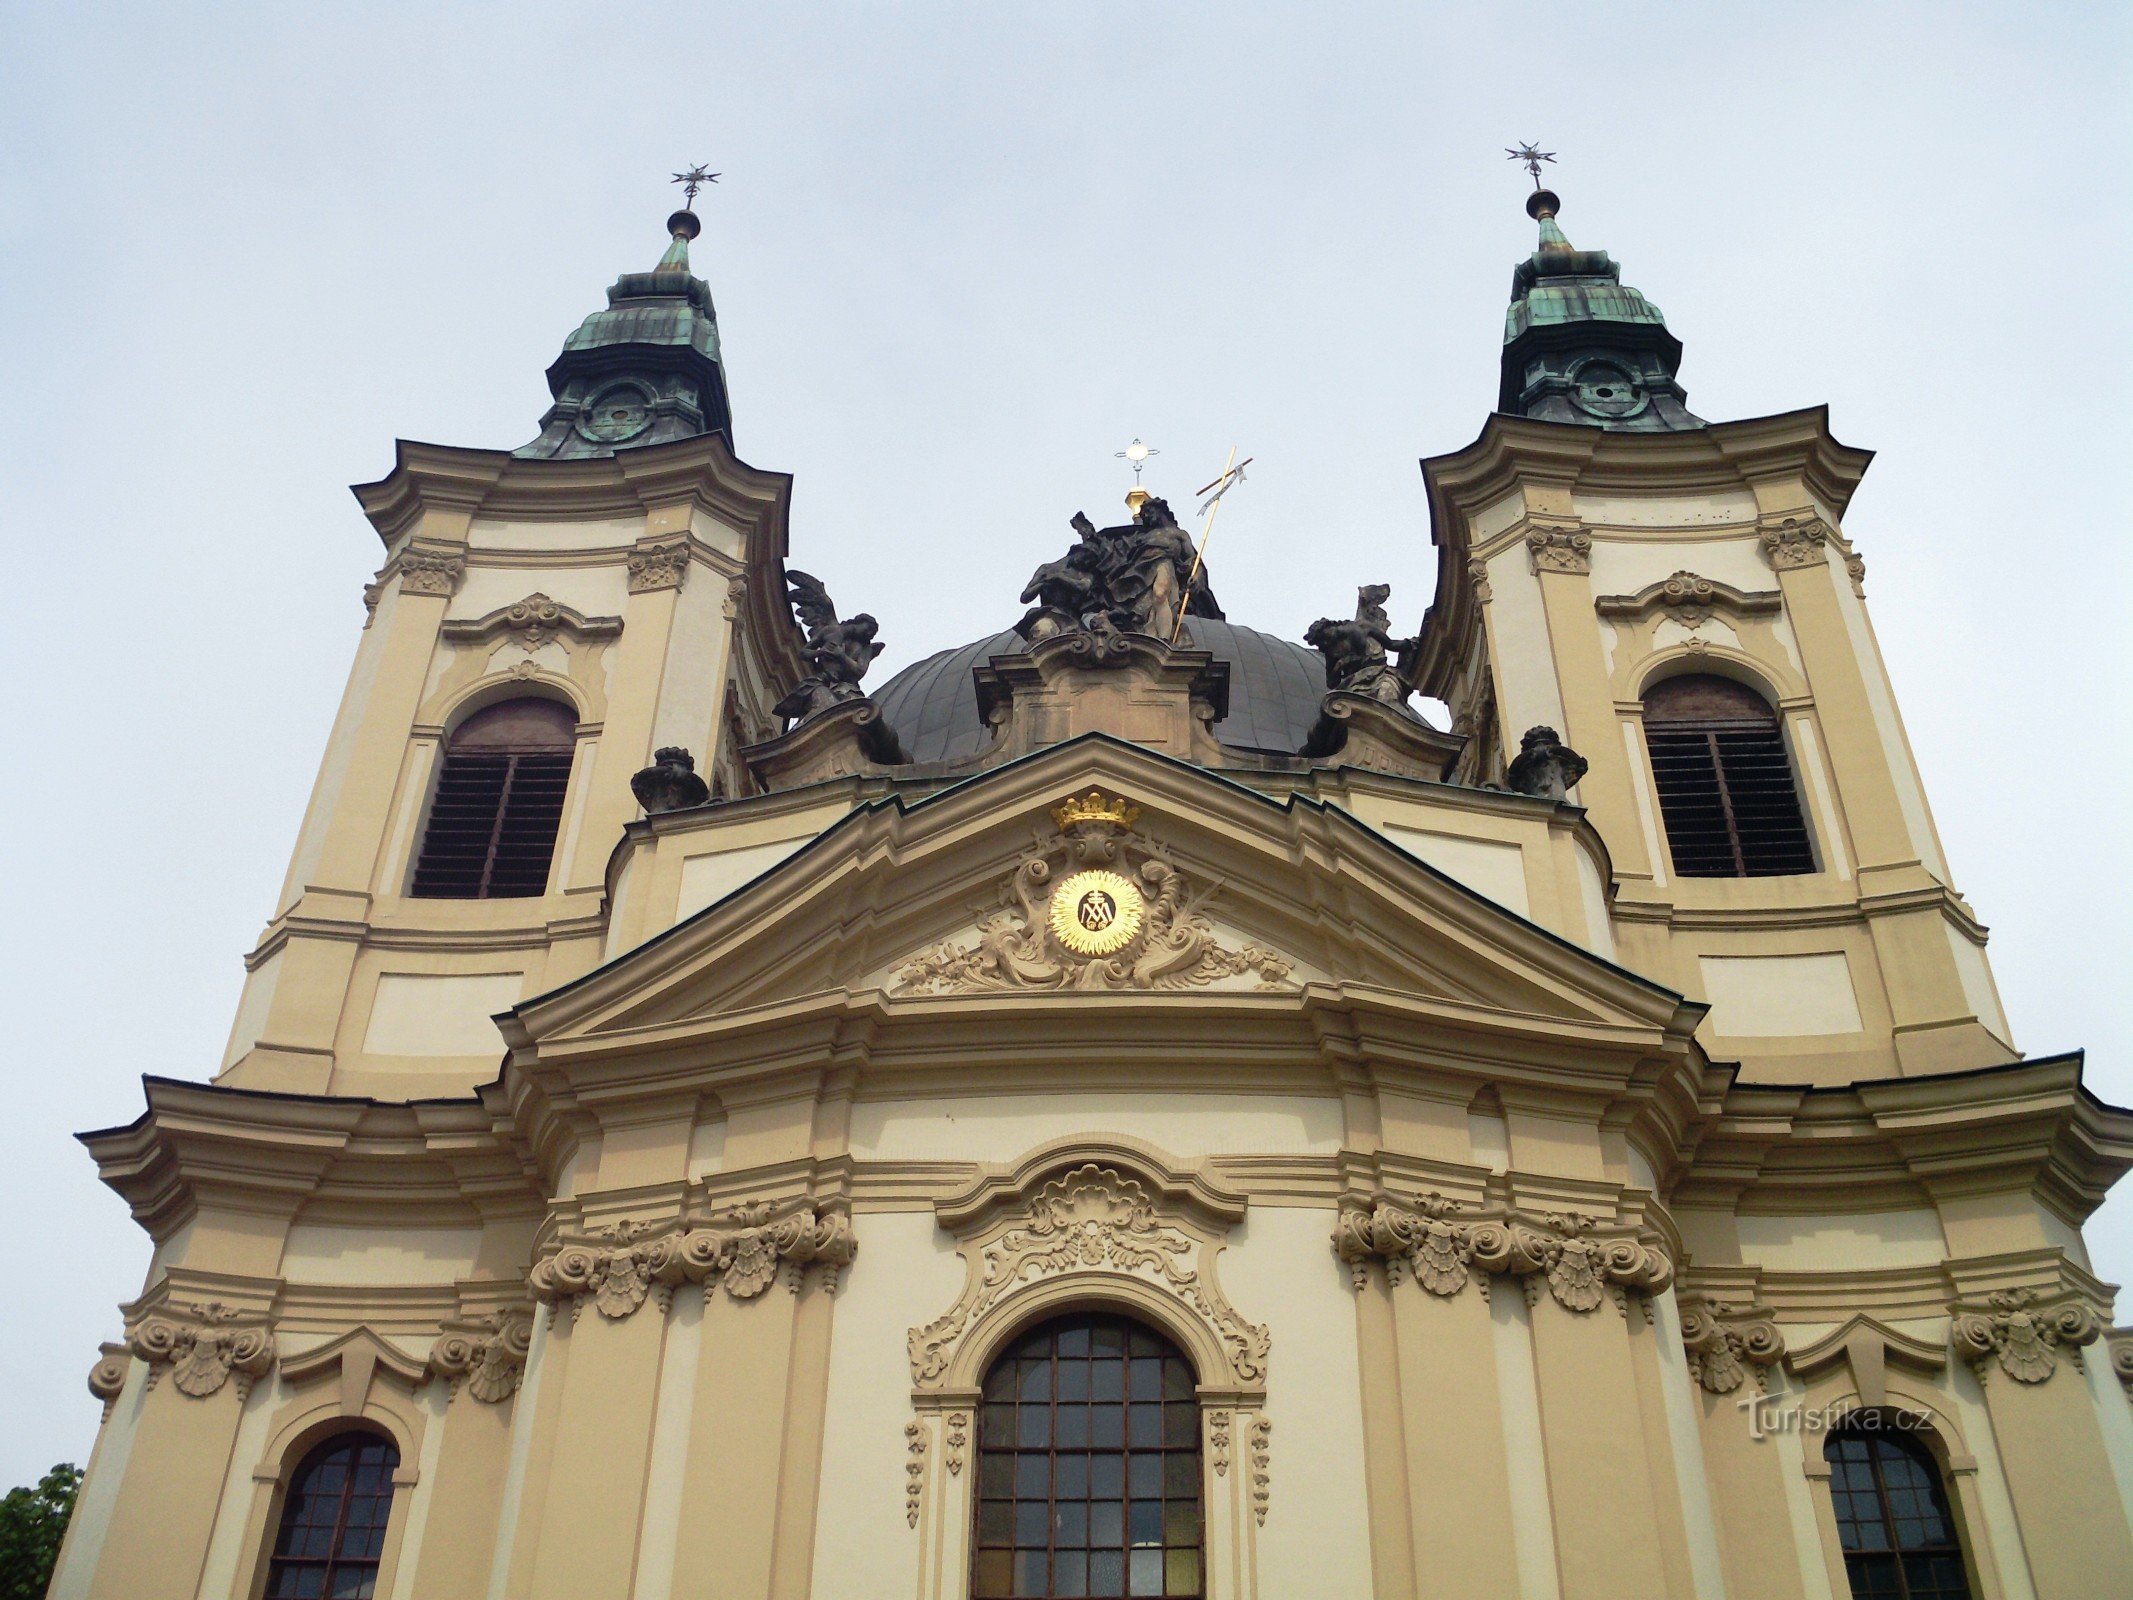 Kroměříž - church of St. John the Baptist